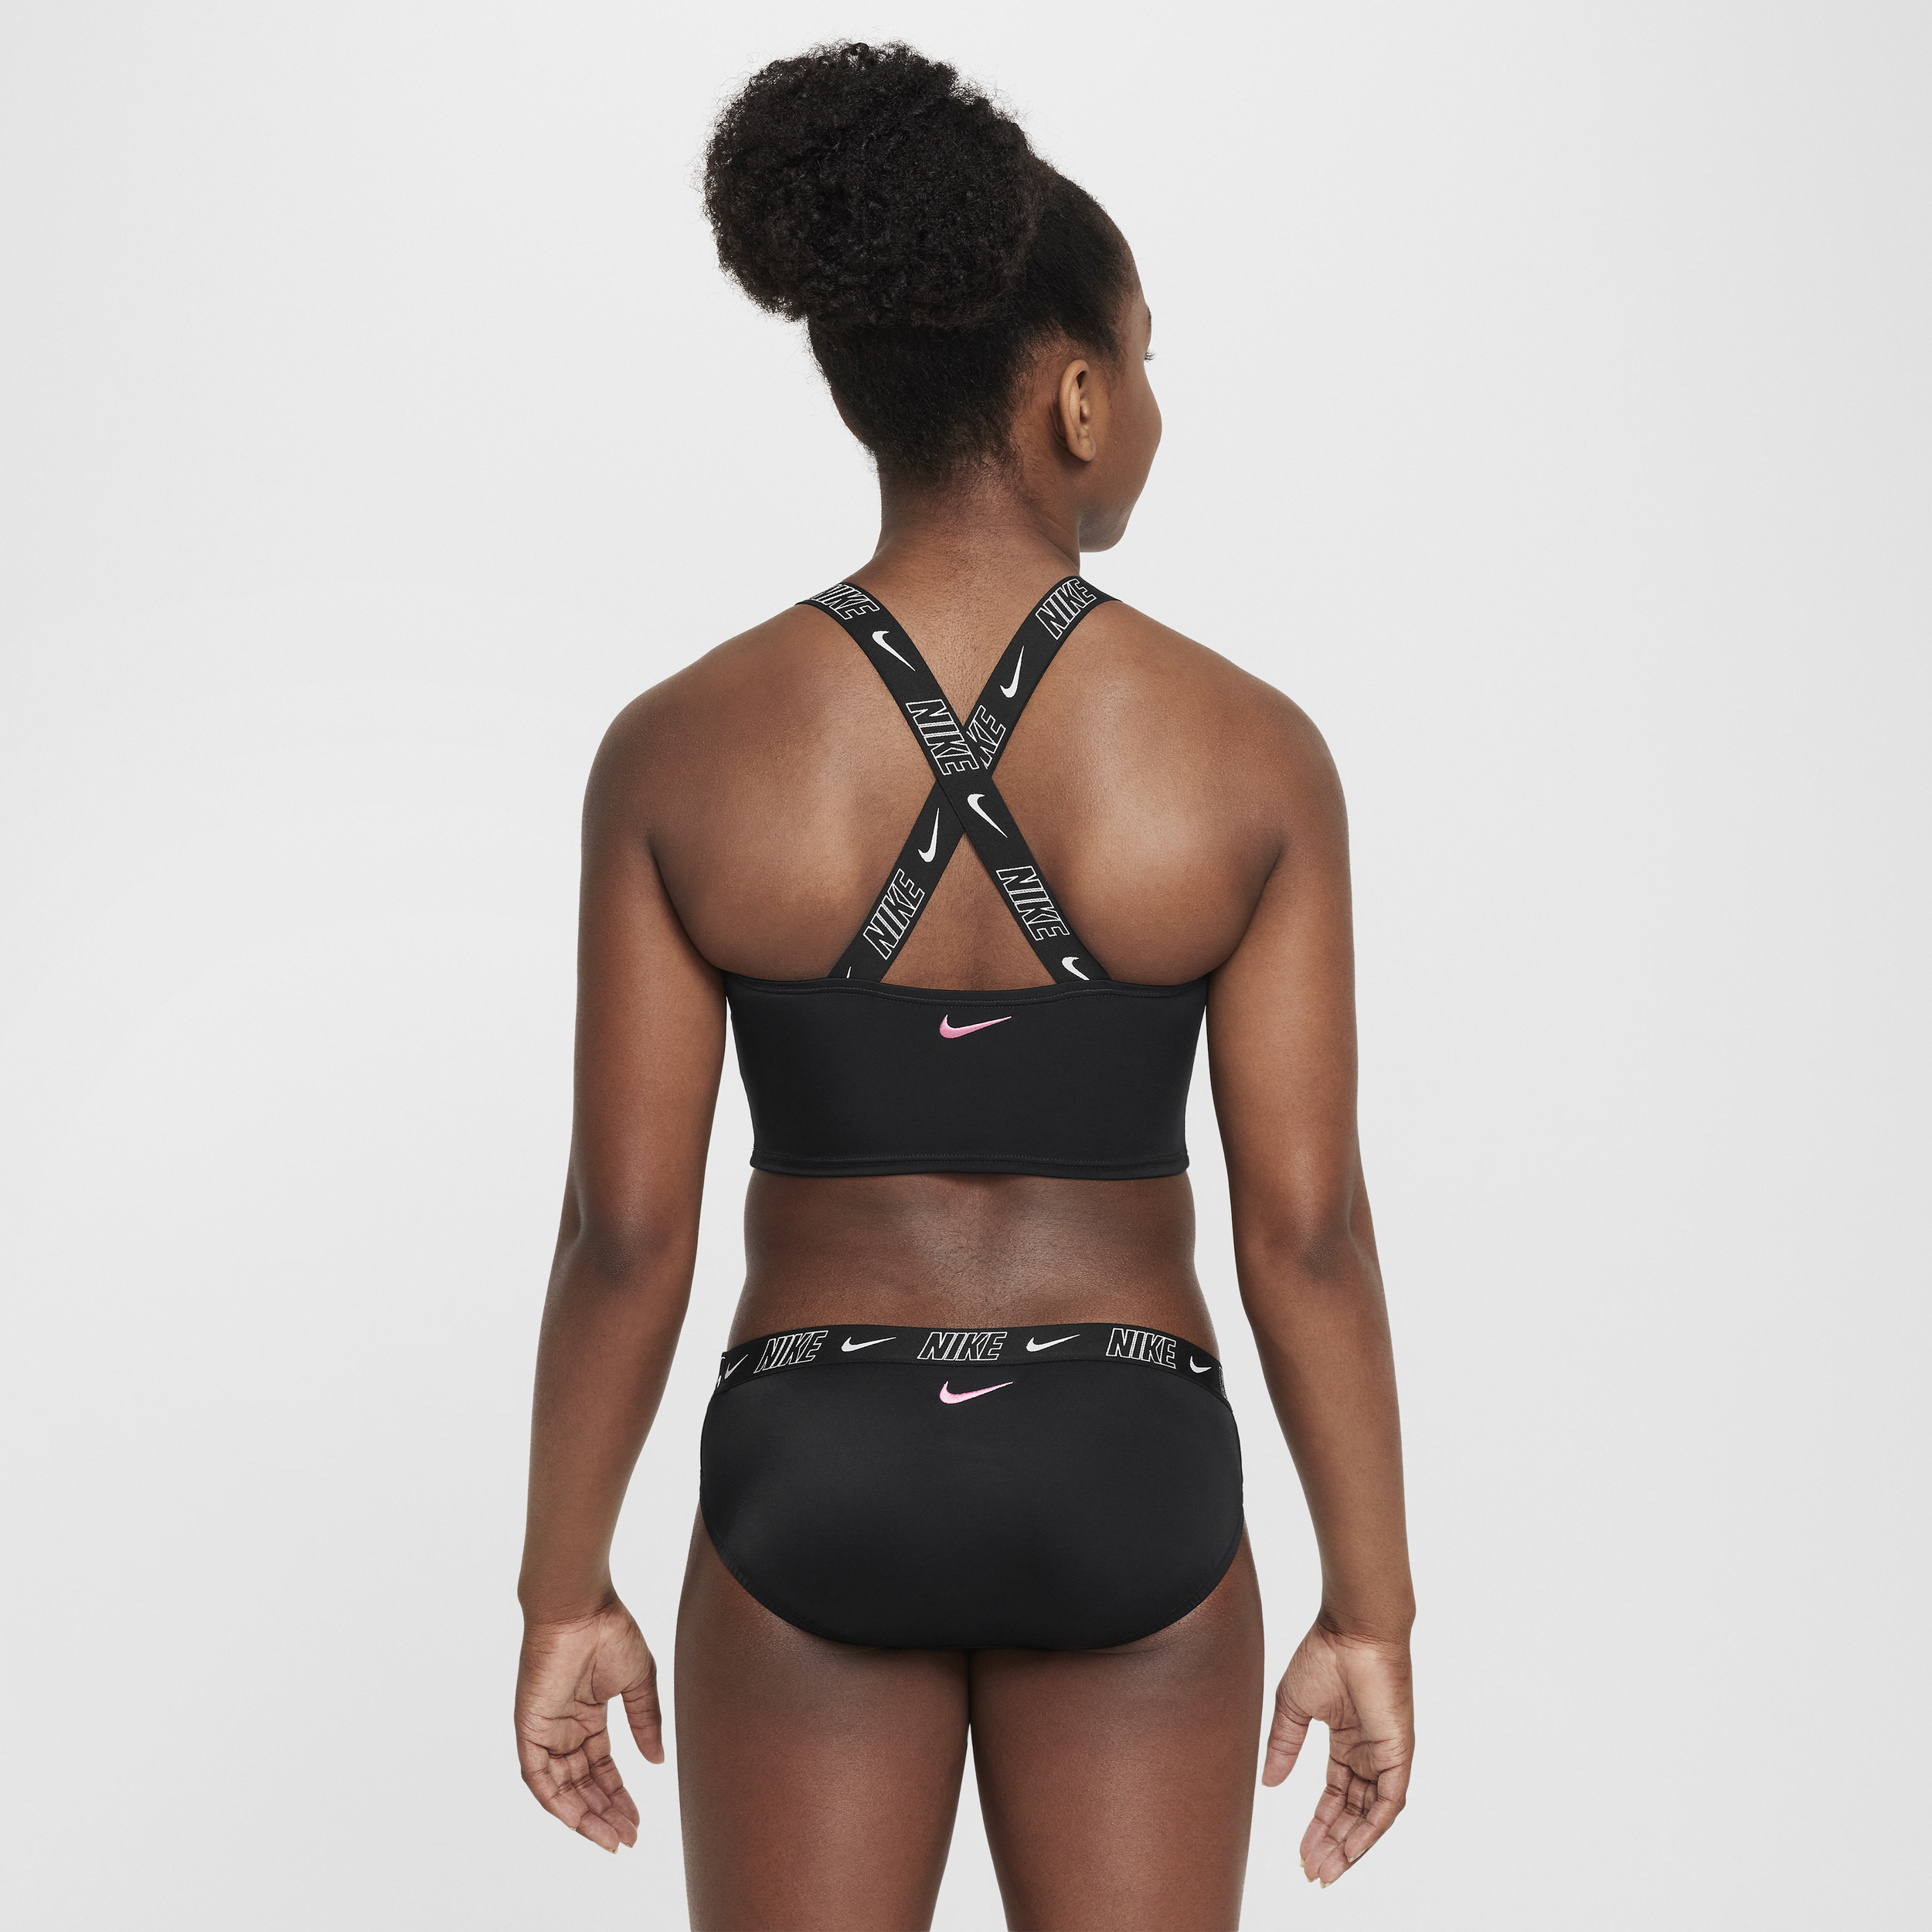 Nike Swim midkiniset met gekruiste bandjes voor meisjes Zwart